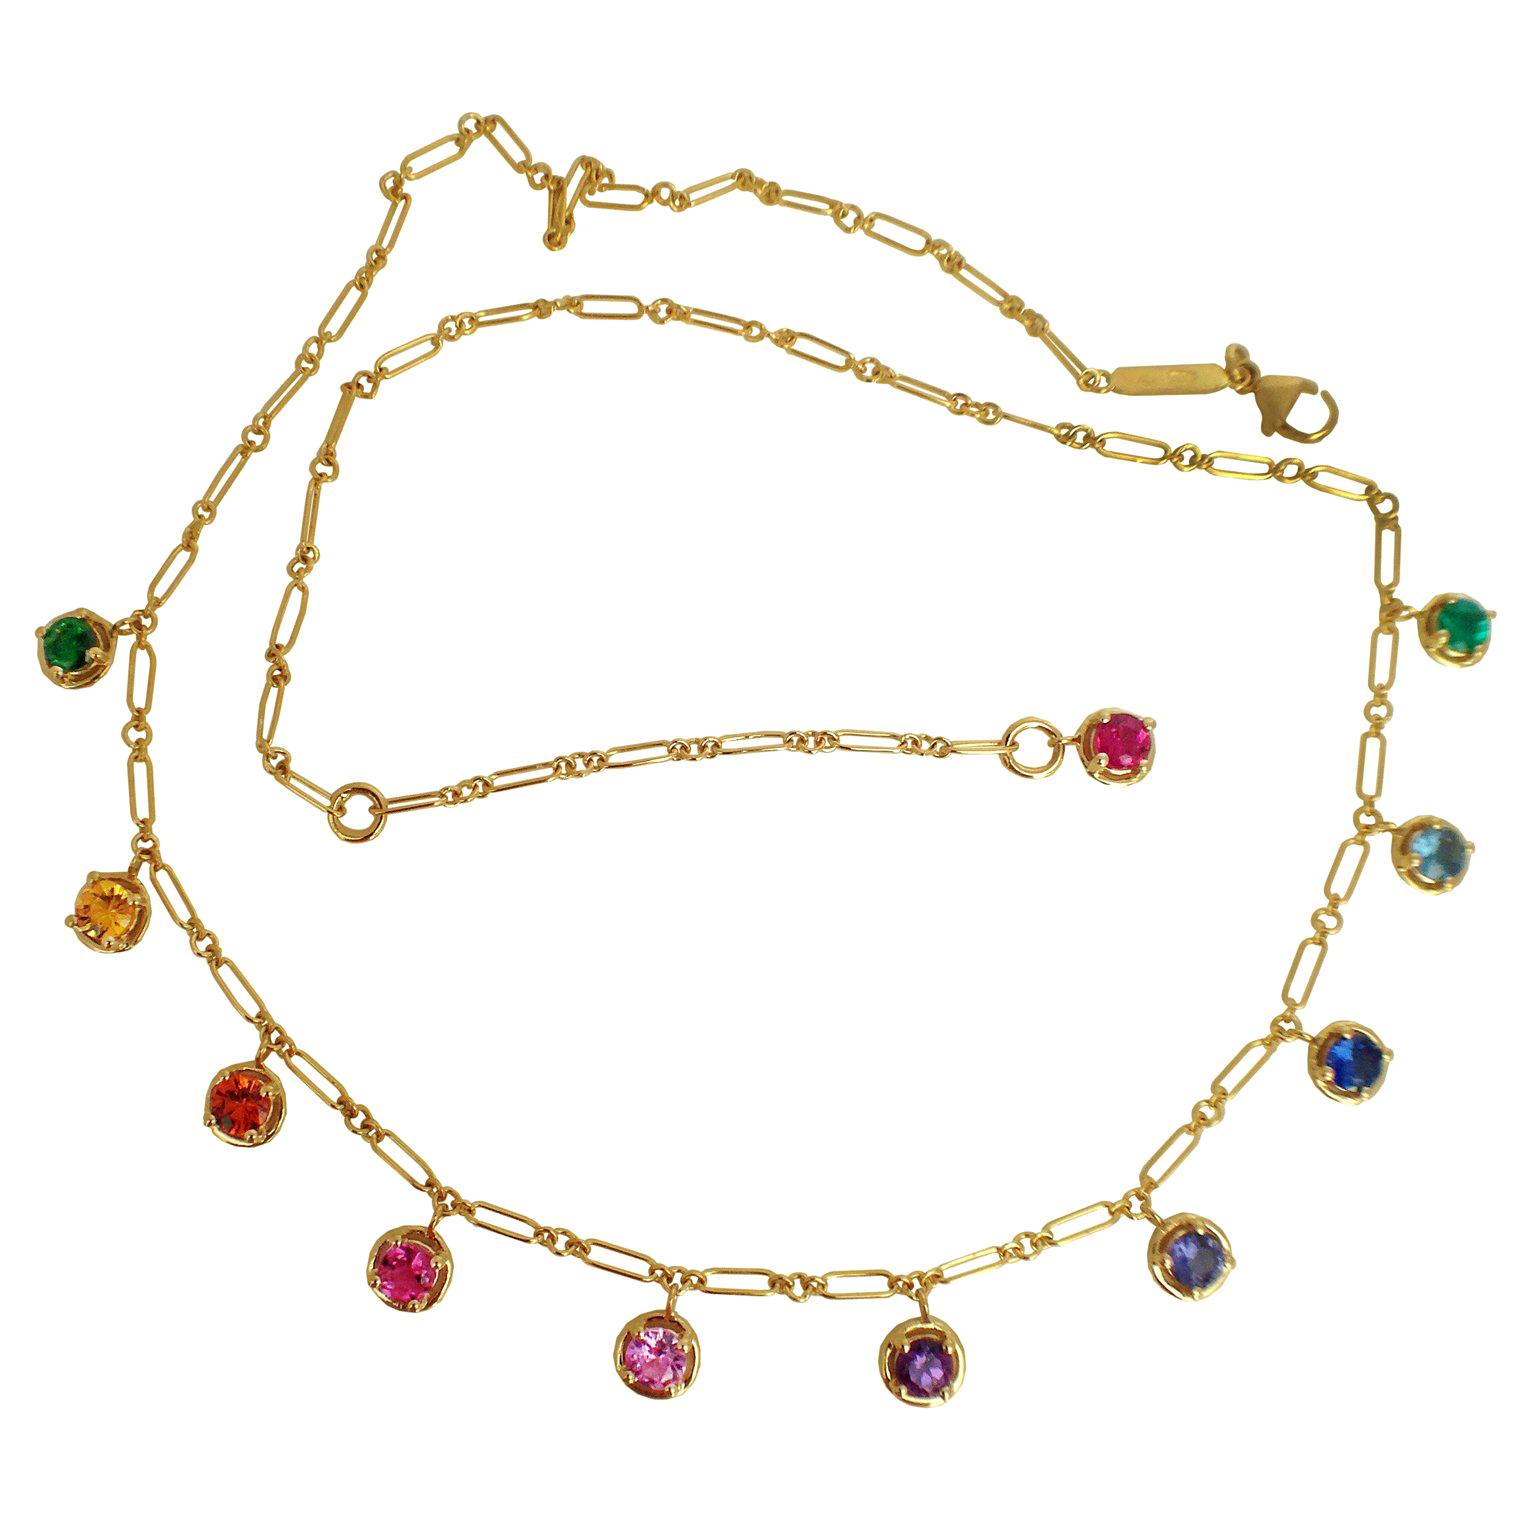 Handgefertigte Halskette aus 18 Karat Gold mit Regenbogen-Aquamarin, Smaragd, Saphir und Edelstein